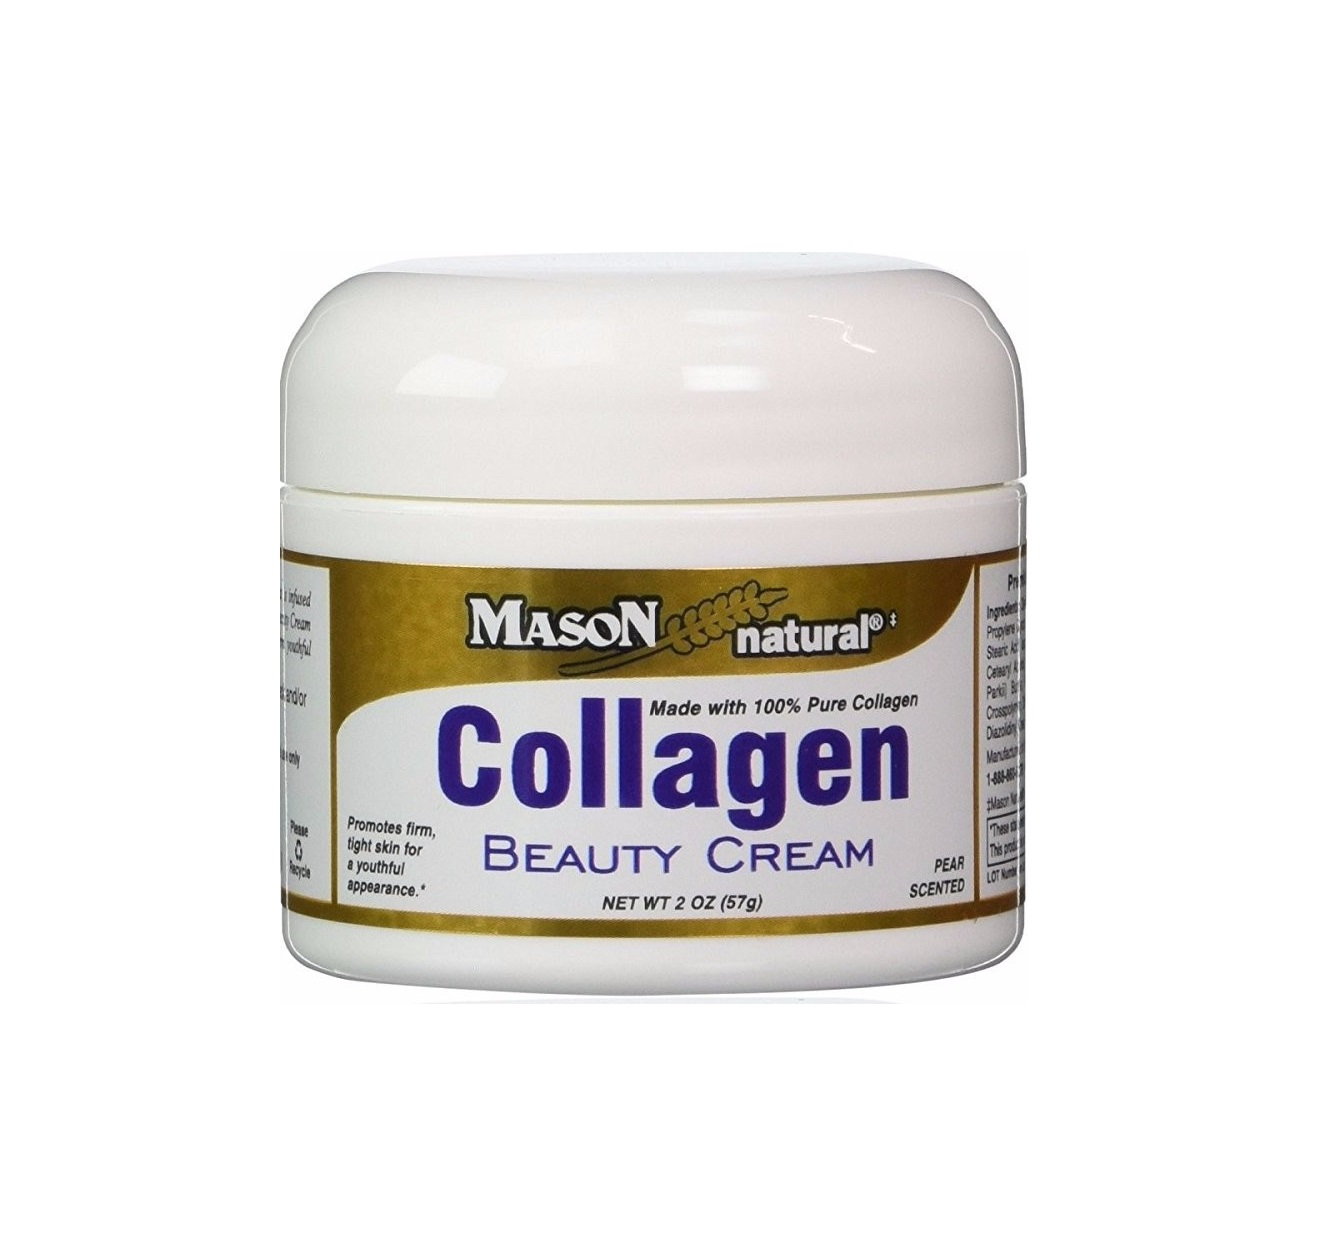 kem-collagen - Toàn quốc - Kem Dưỡng Da Collagen Mason Natural Của Mỹ. Kem-duong-da-collagen-01